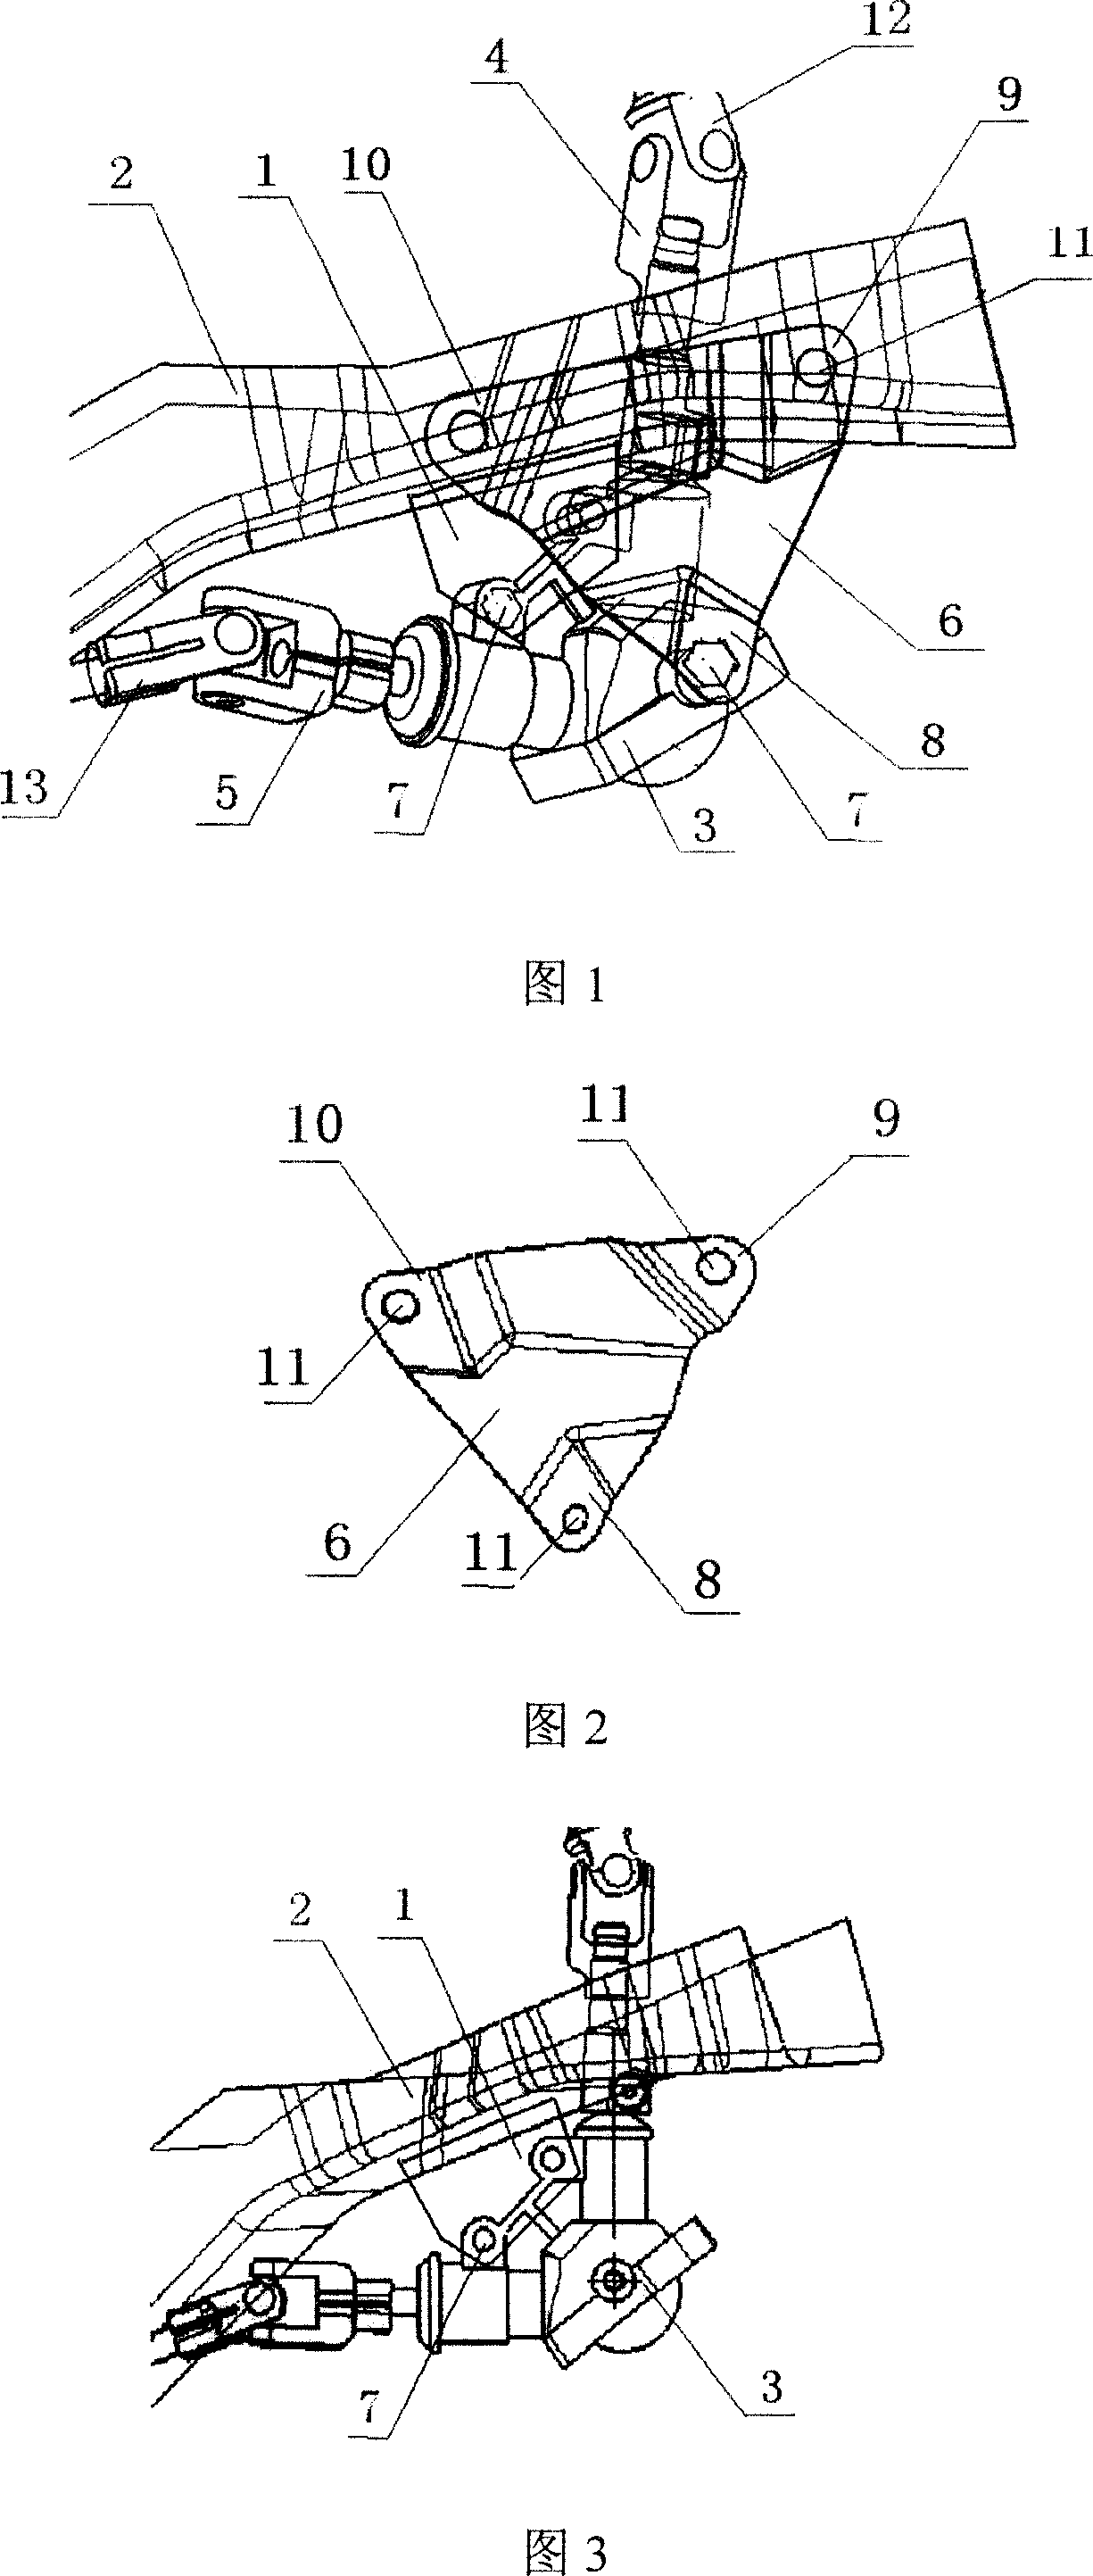 Steering mechanism of motor vehicle